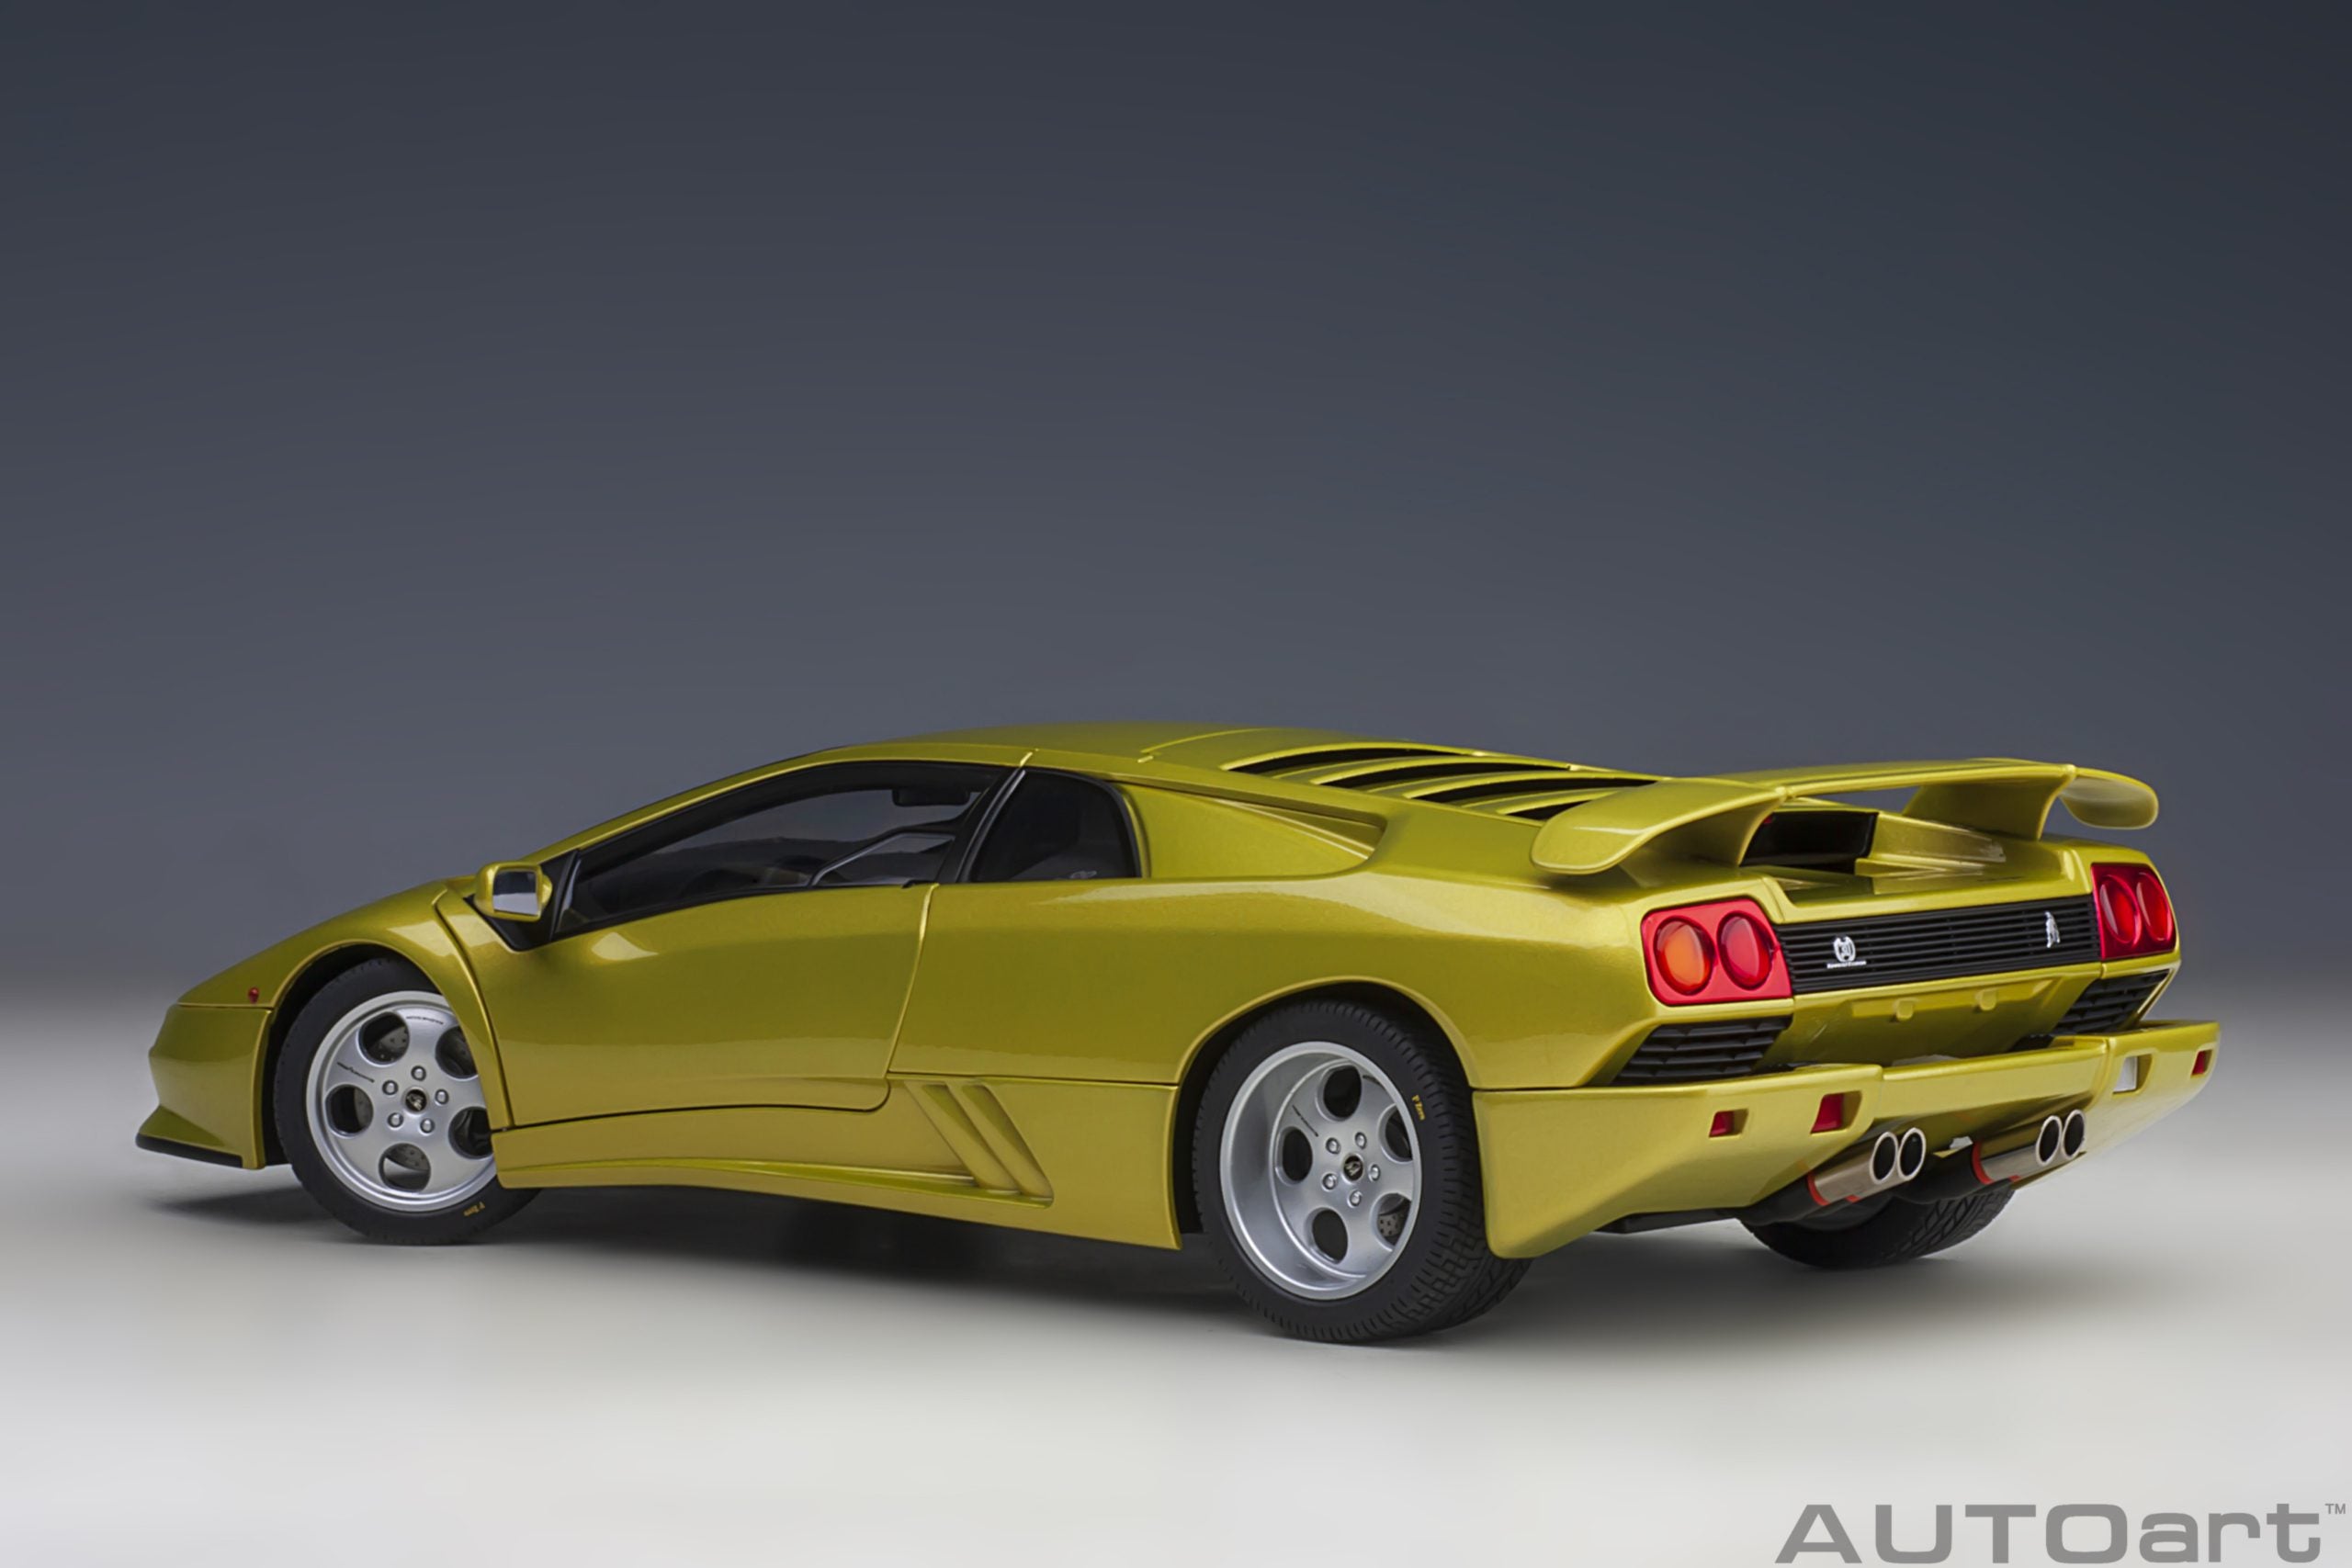 AUTOart 1:18 Lamborghini Diablo SE 30th Anniversary Edition